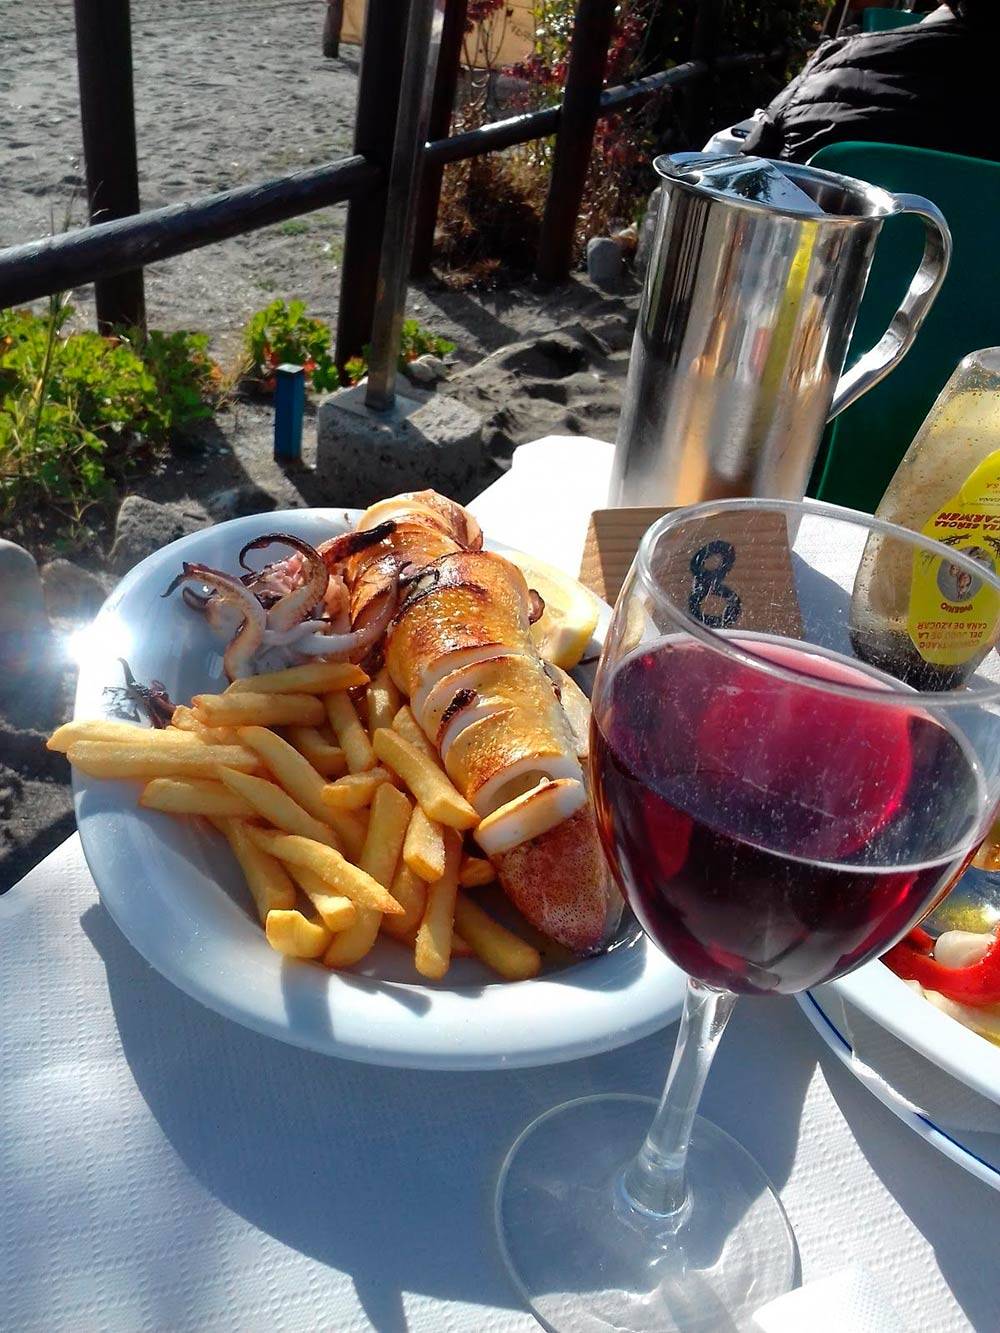 В ресторане на пляже мы заказали кальмара на гриле, картошку и пару бокалов вина. Все это стоило 20 €